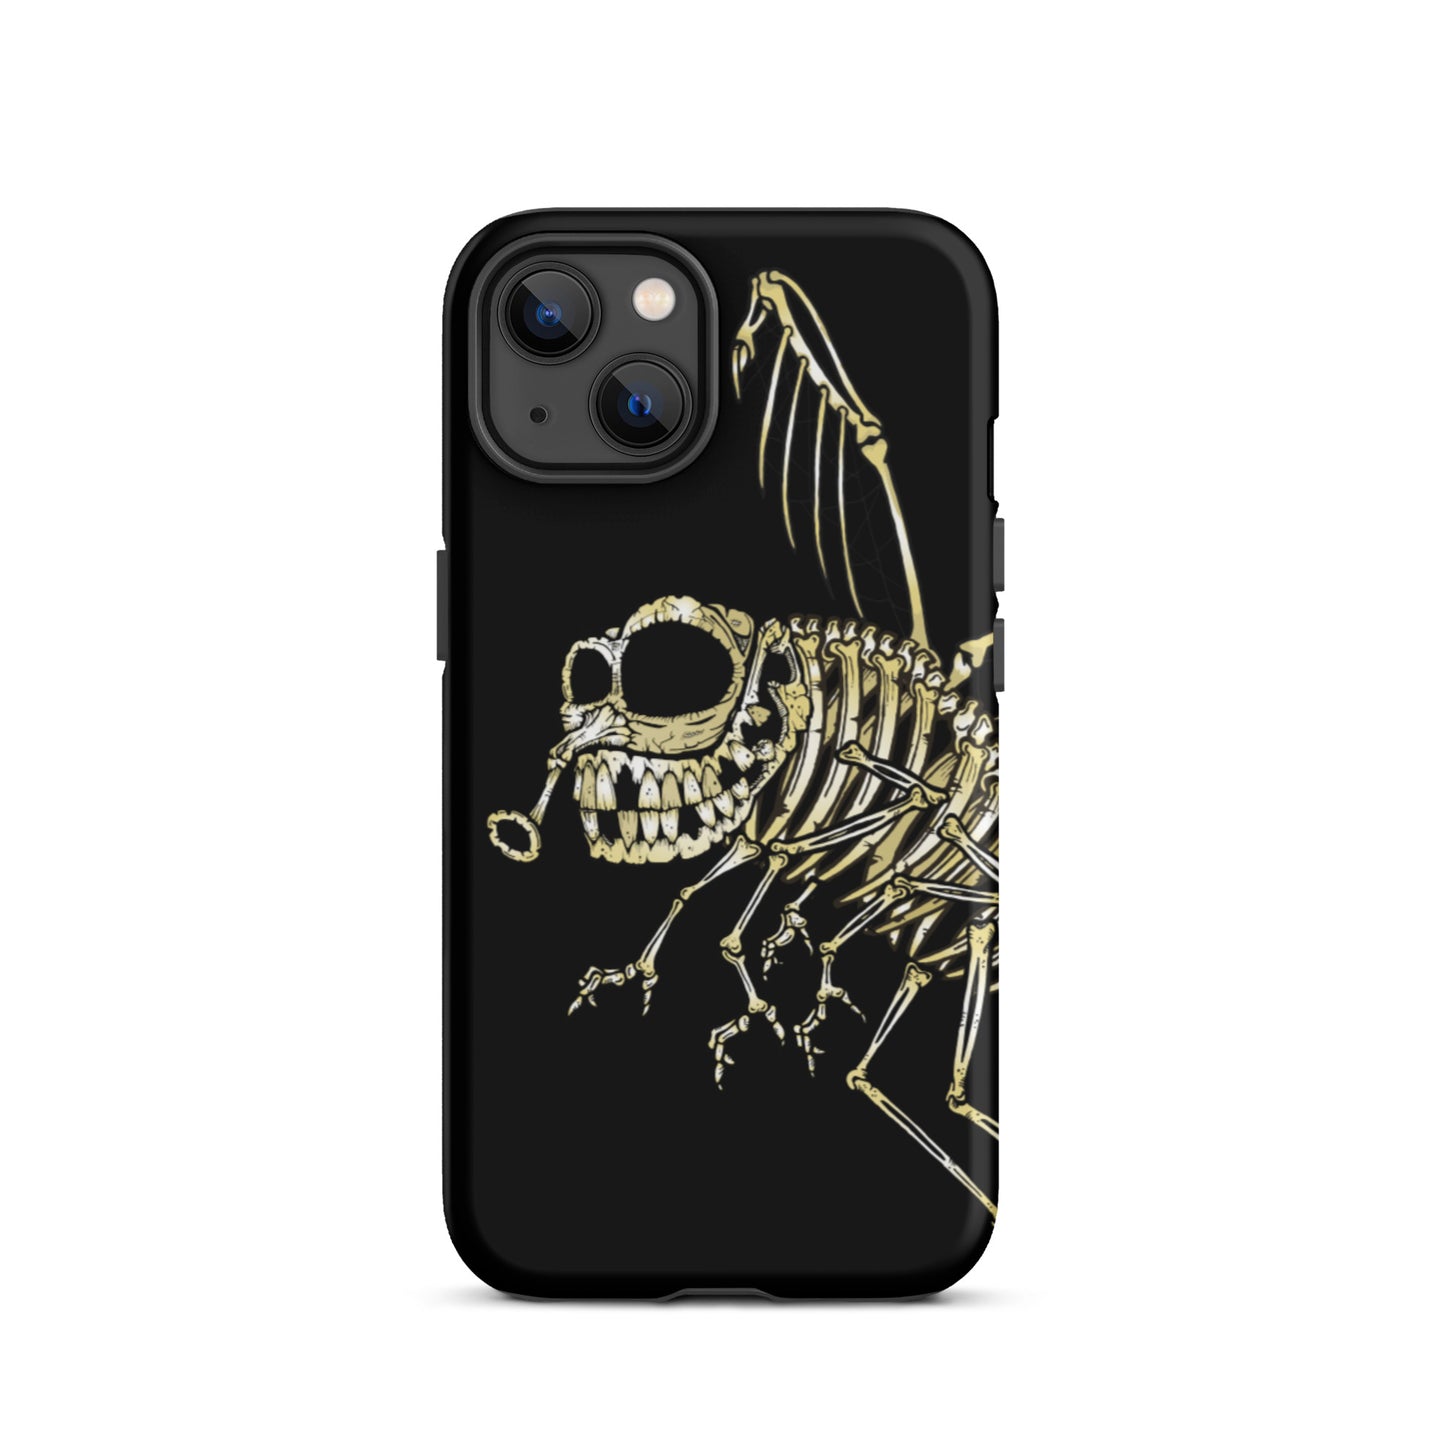 Bones Tough iPhone Case